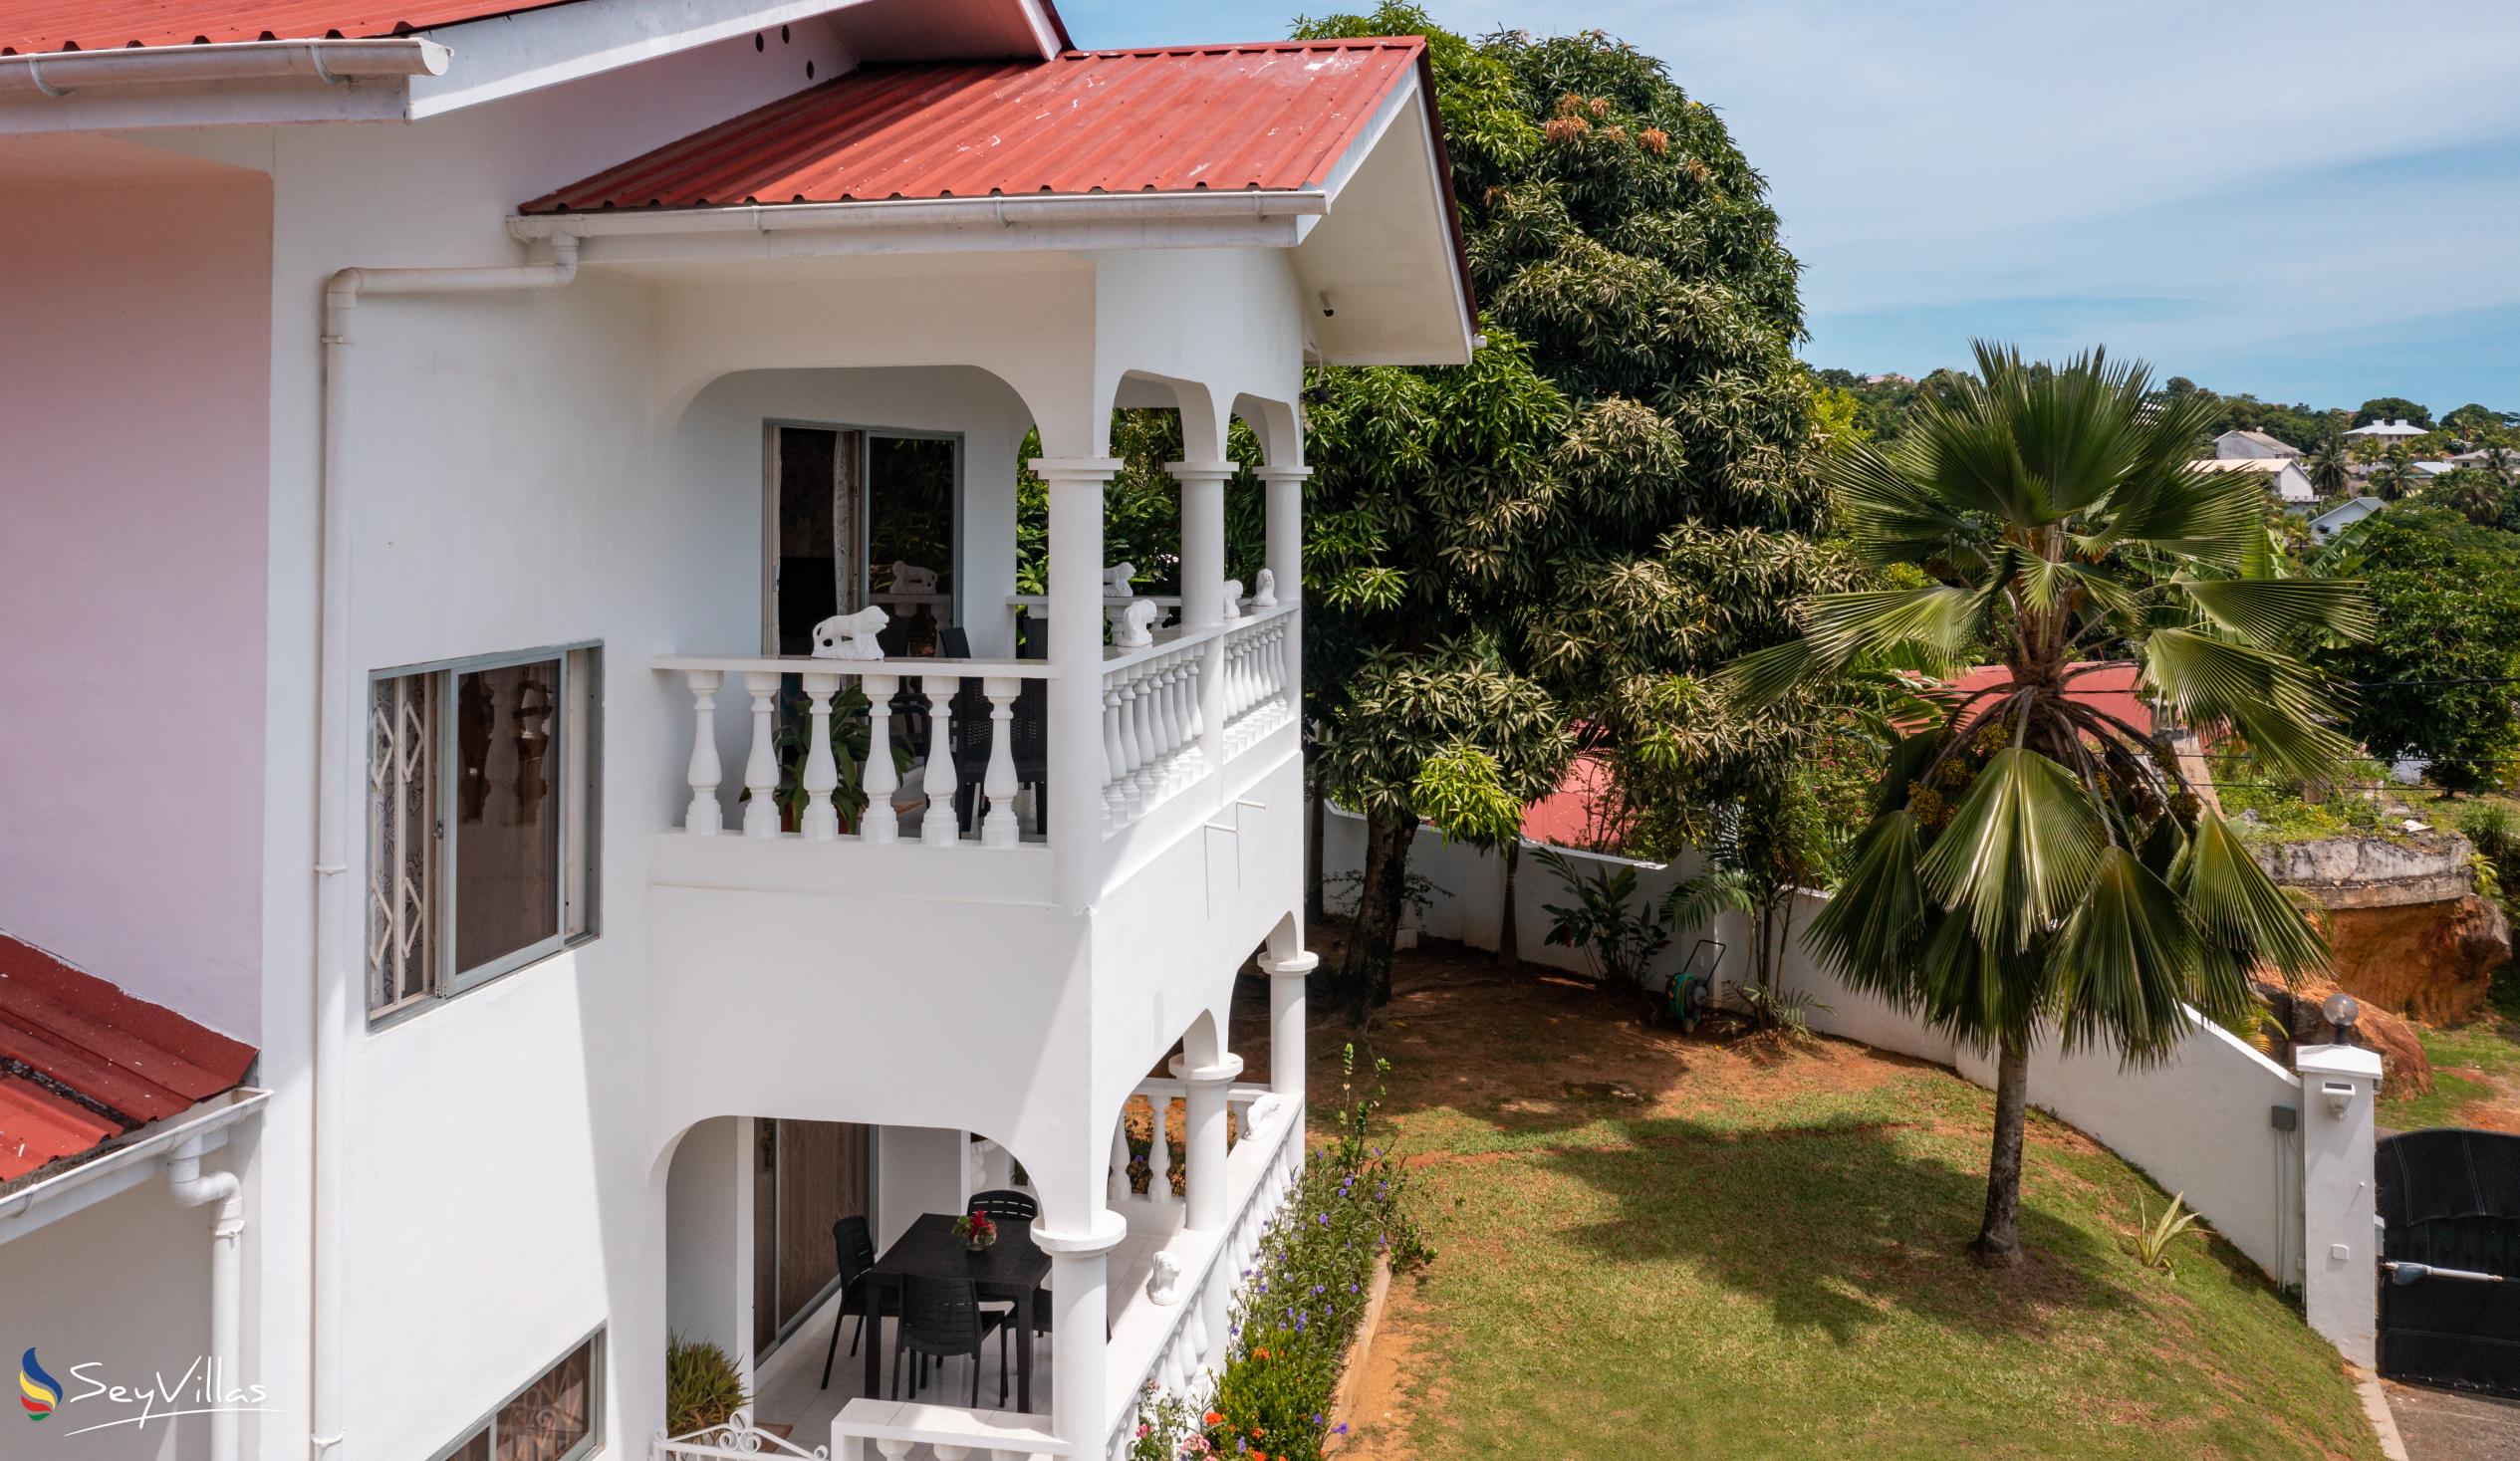 Foto 10: Villa Verde - Extérieur - Mahé (Seychelles)